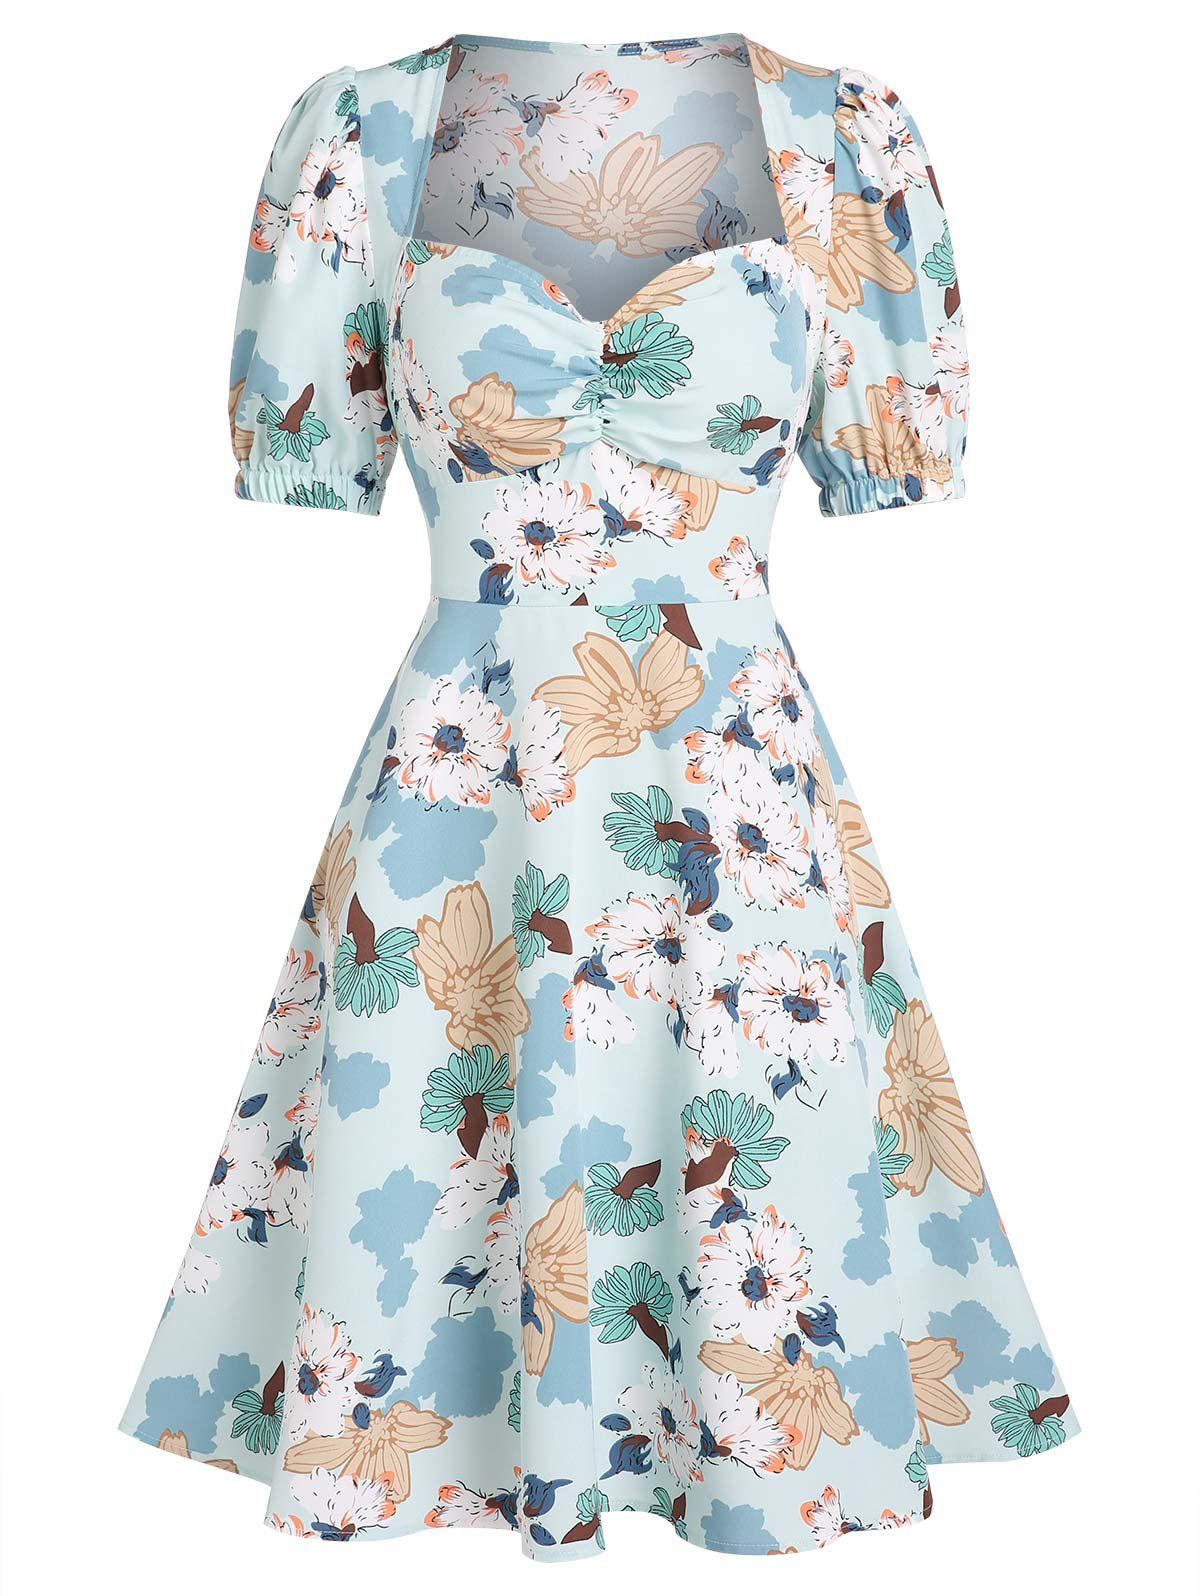 Puff Sleeve Flower Print Milkmaid Dress - LIGHT BLUE XXXL